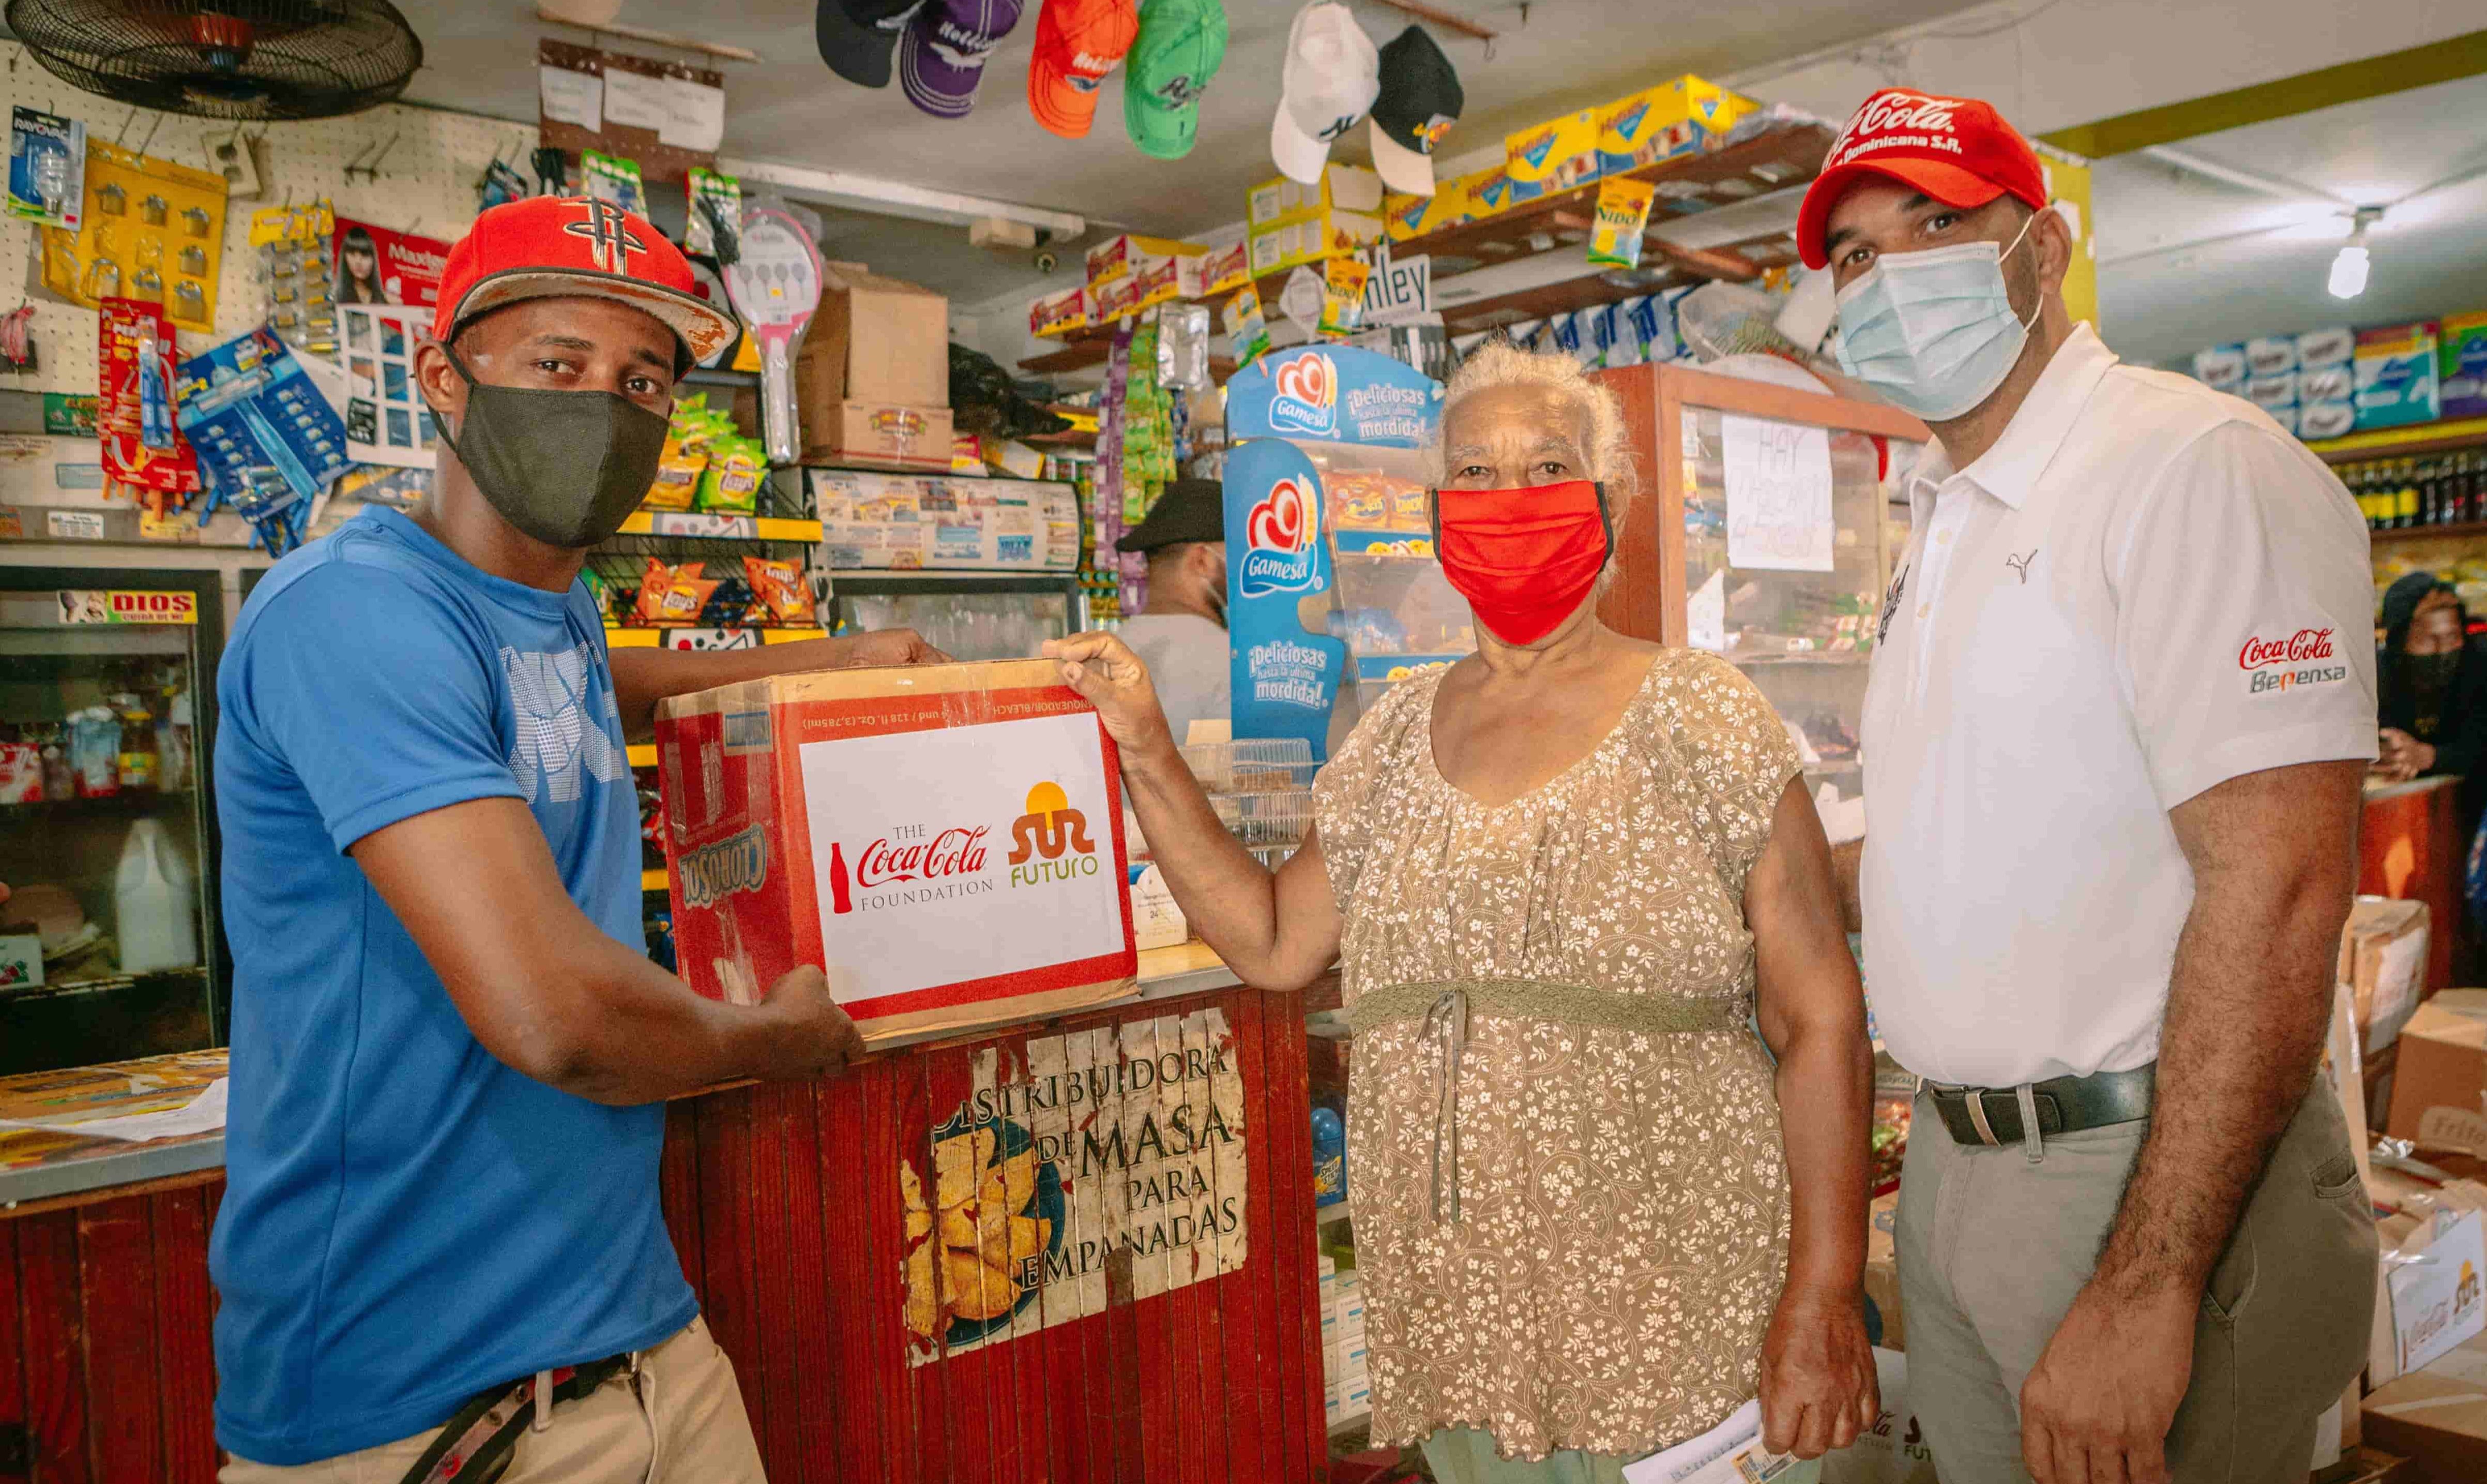 Sur Futuro y Fundación Coca-Cola integran propietarios de colmados en programa de apoyo alimentario a familias vulnerables